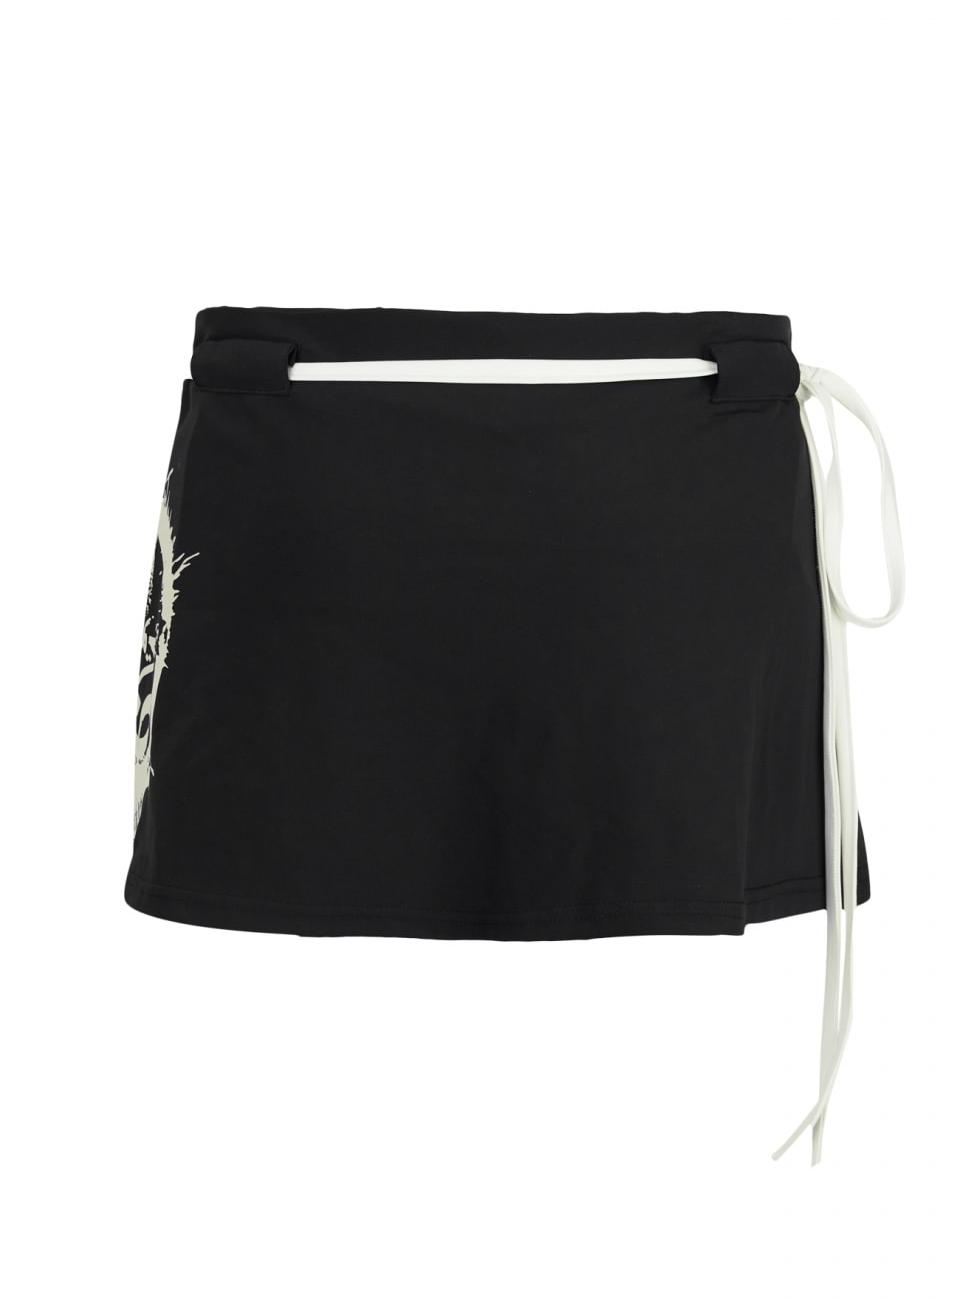 Cerric Women String Swimwear Skirt Black